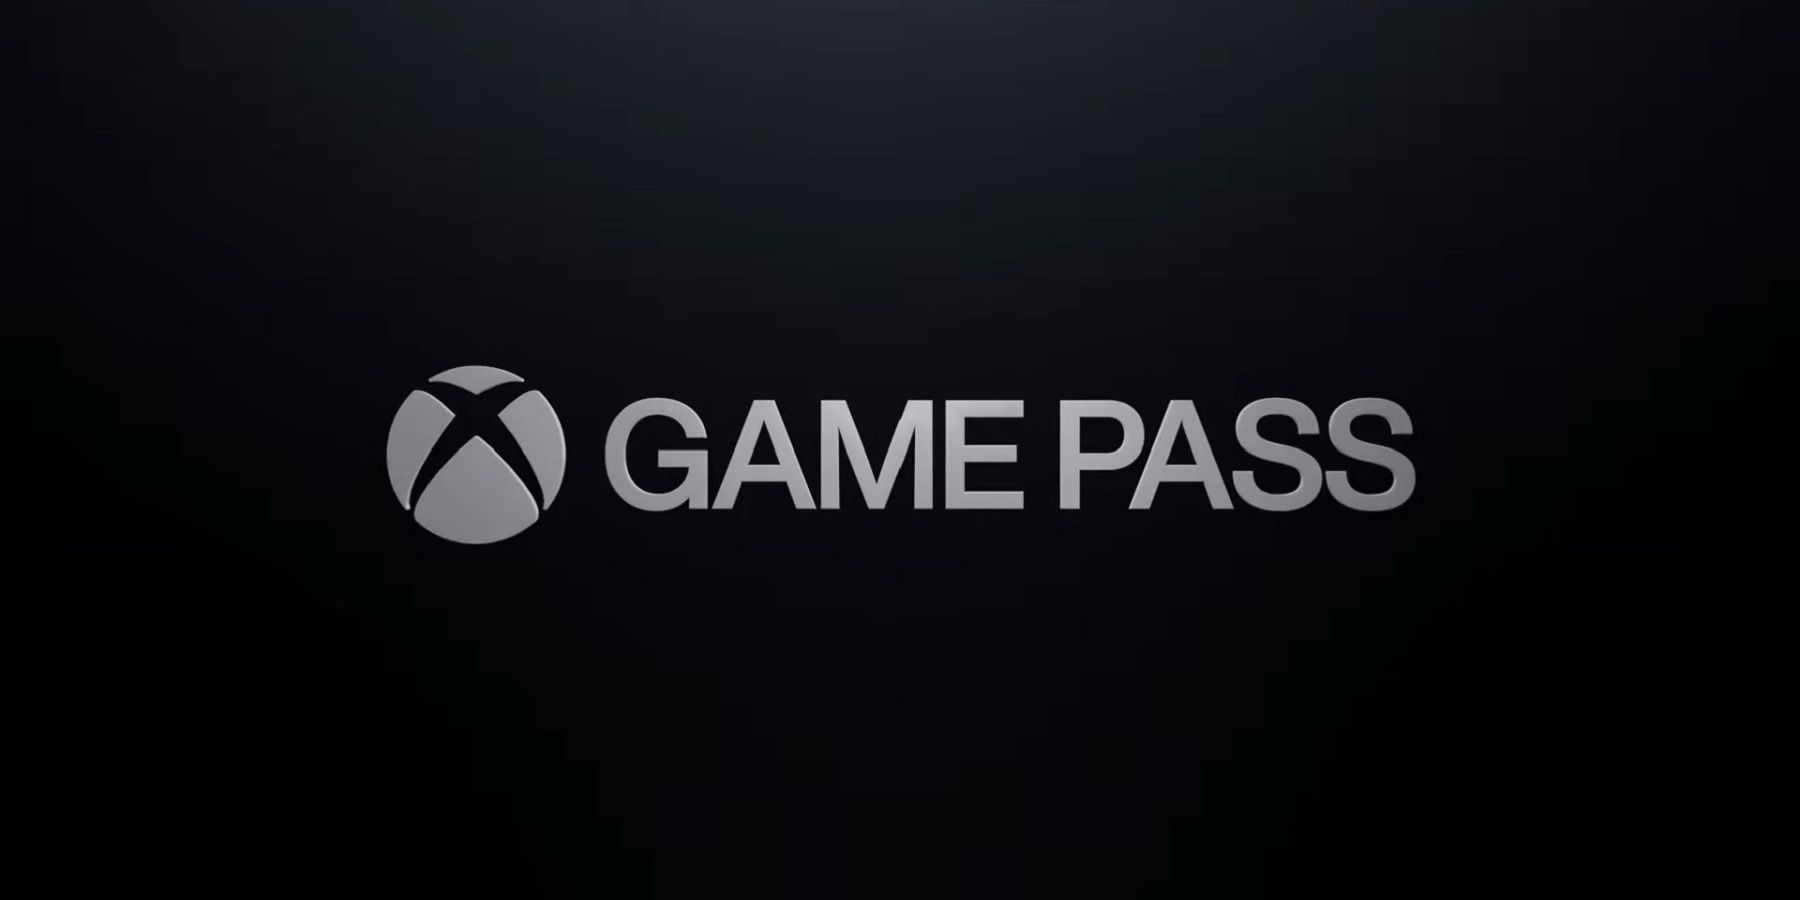 xbox game pass white logo black background